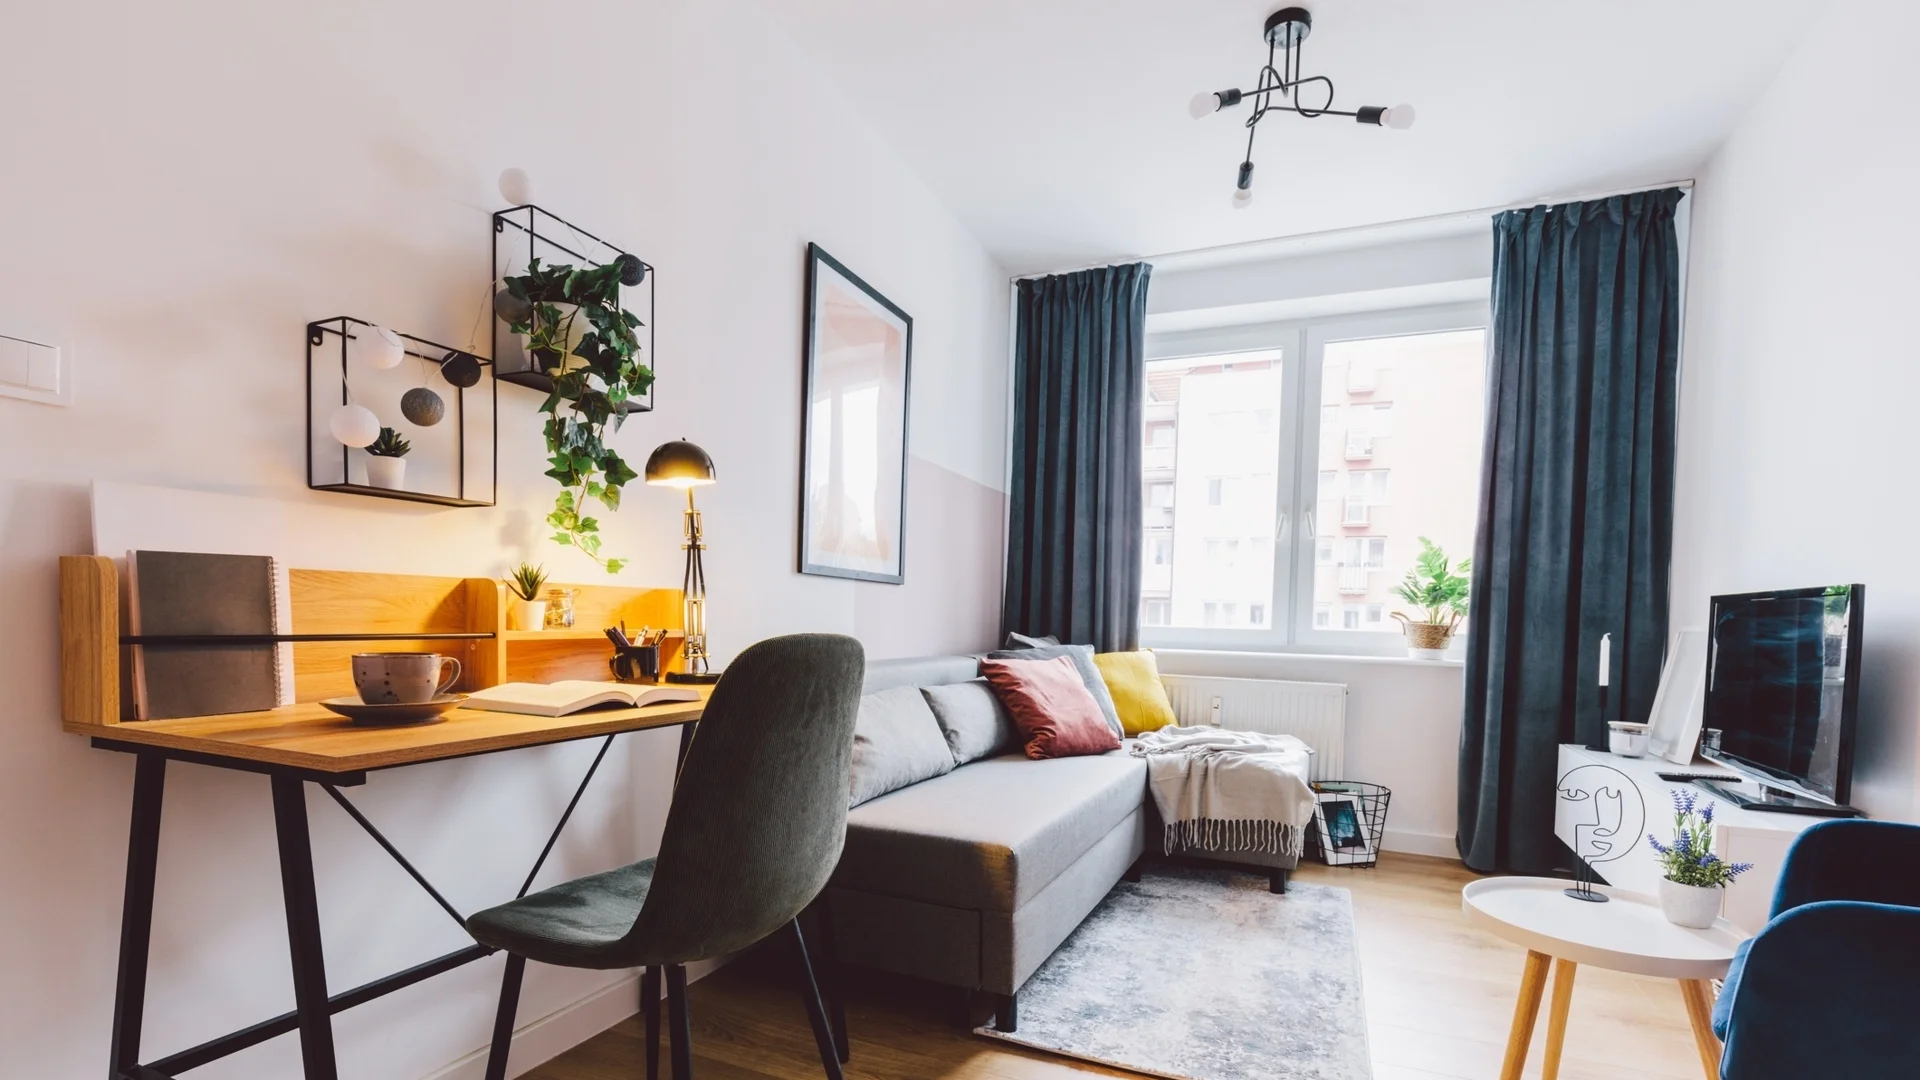 Задава се значително поевтиняване на престоя в Airbnb 